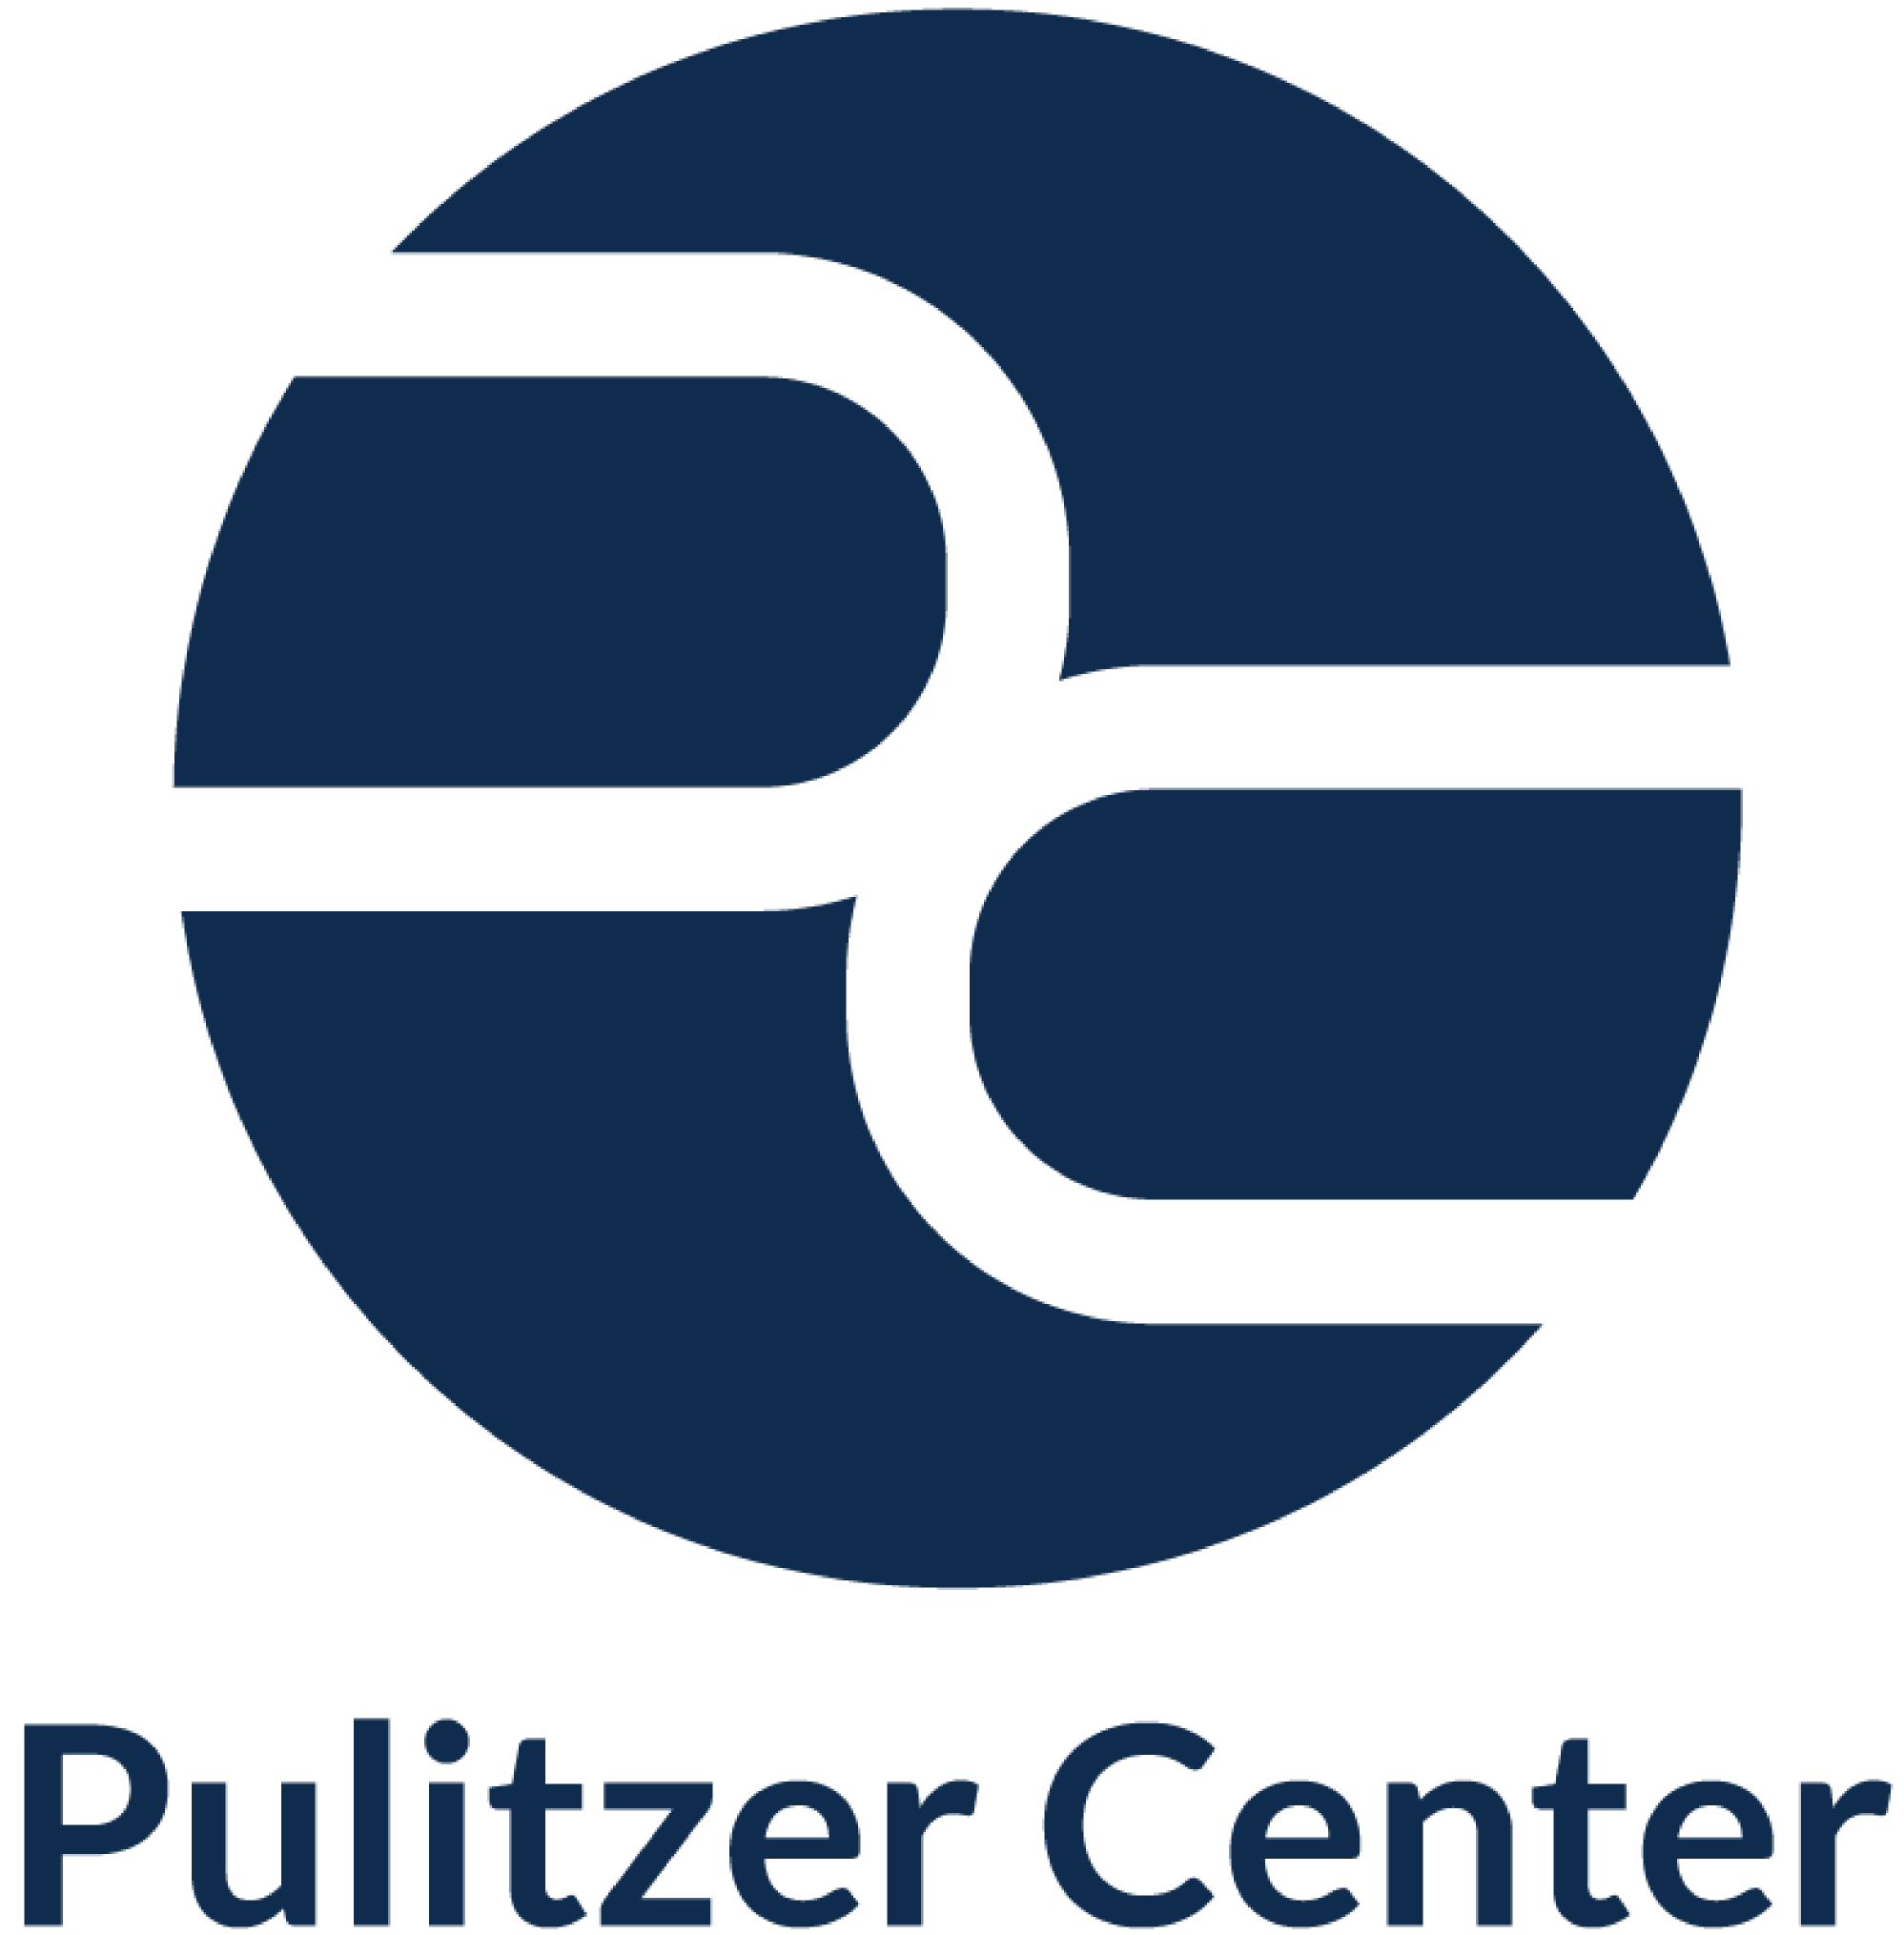 Pulitzer Center